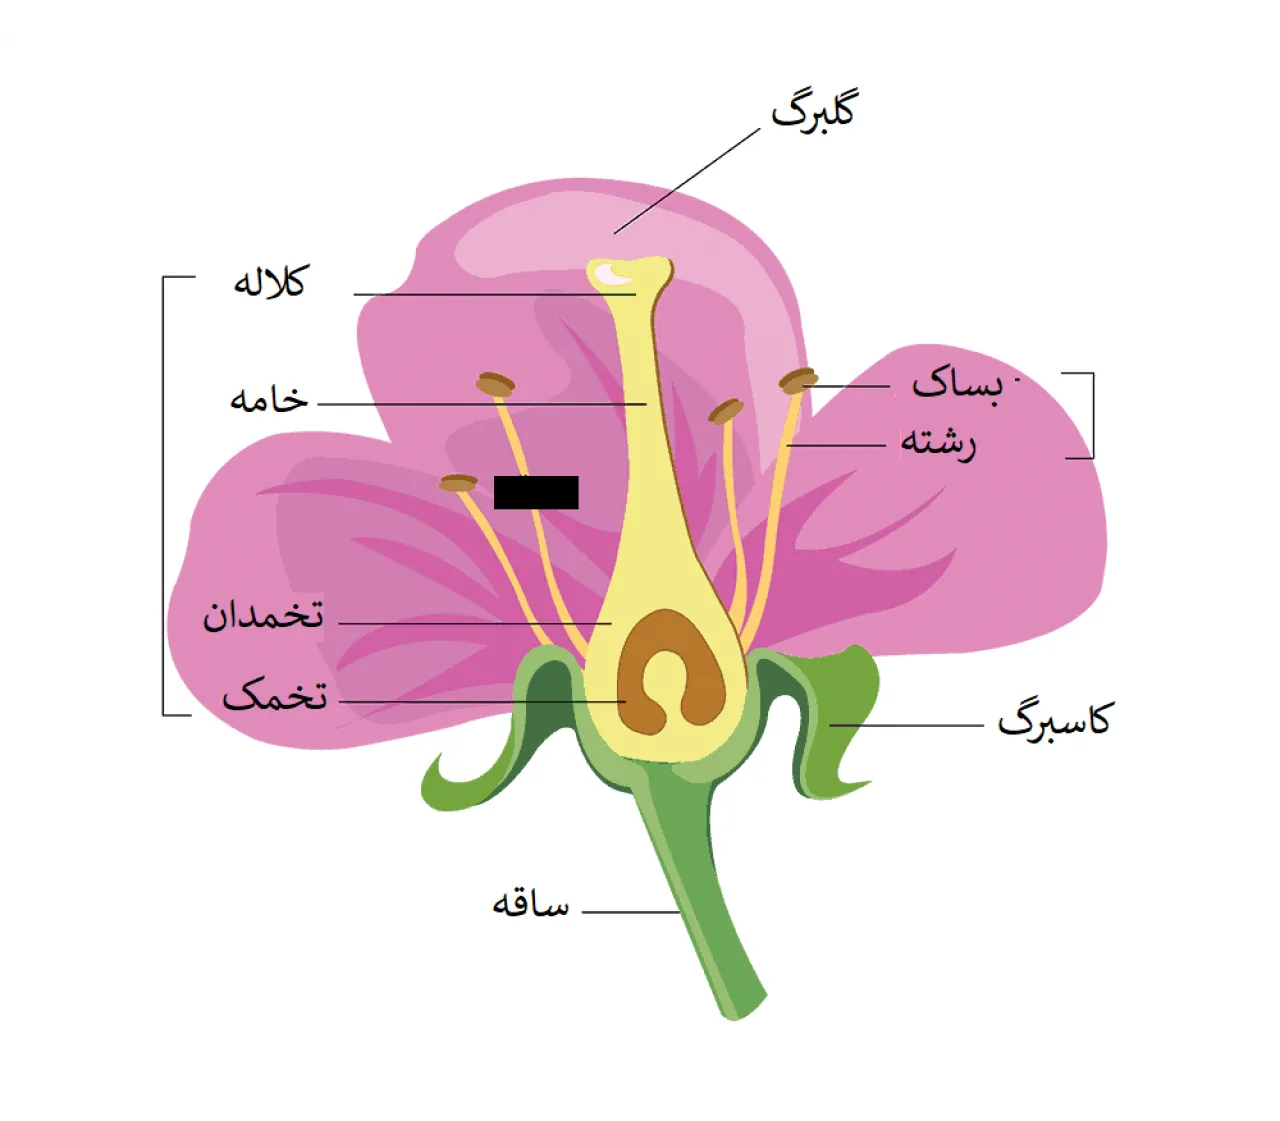 قسمت های مختلف گل